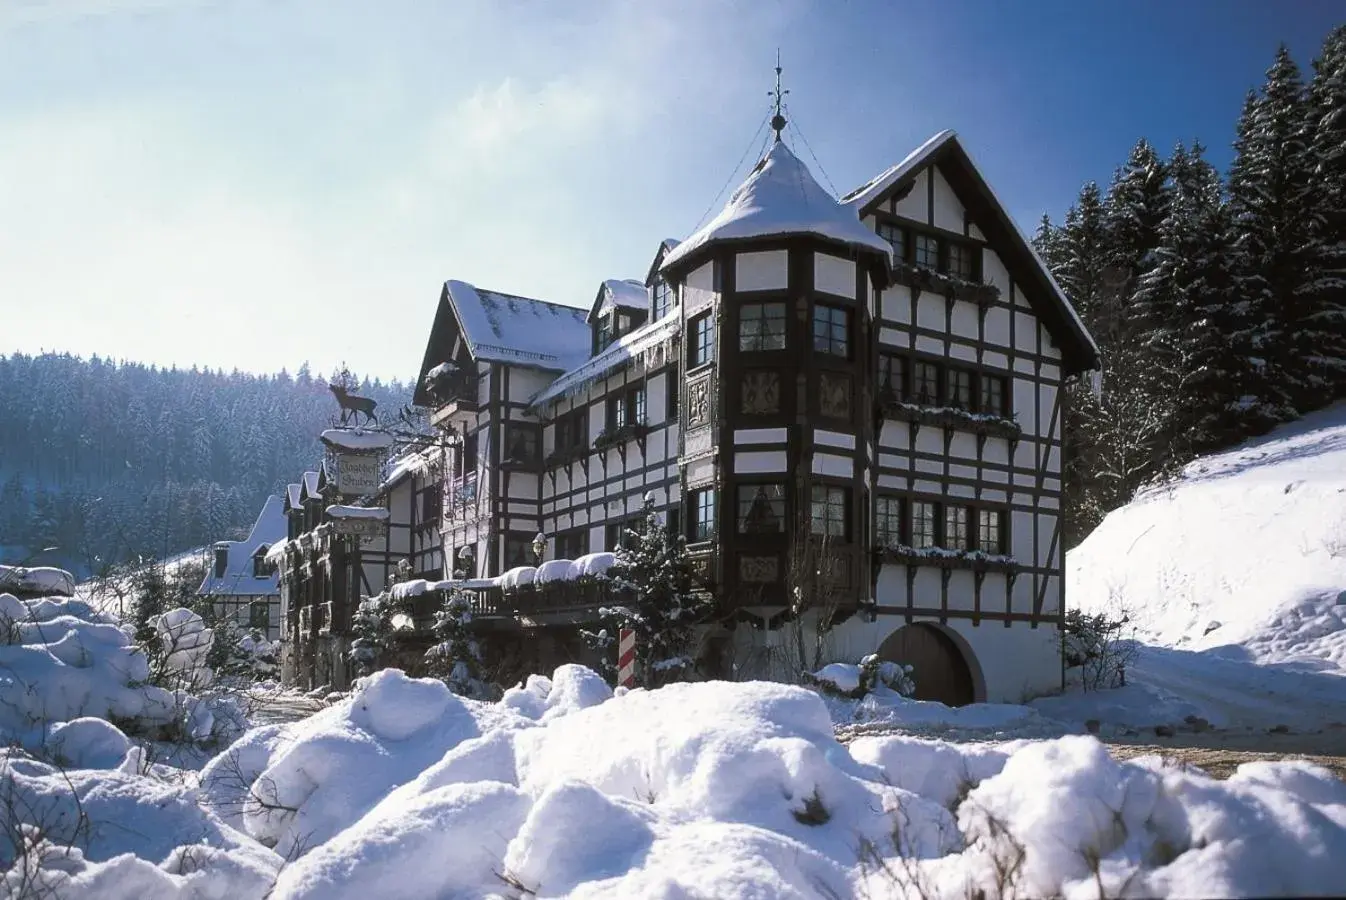 Property building, Winter in Relais & Châteaux Jagdhof Glashütte